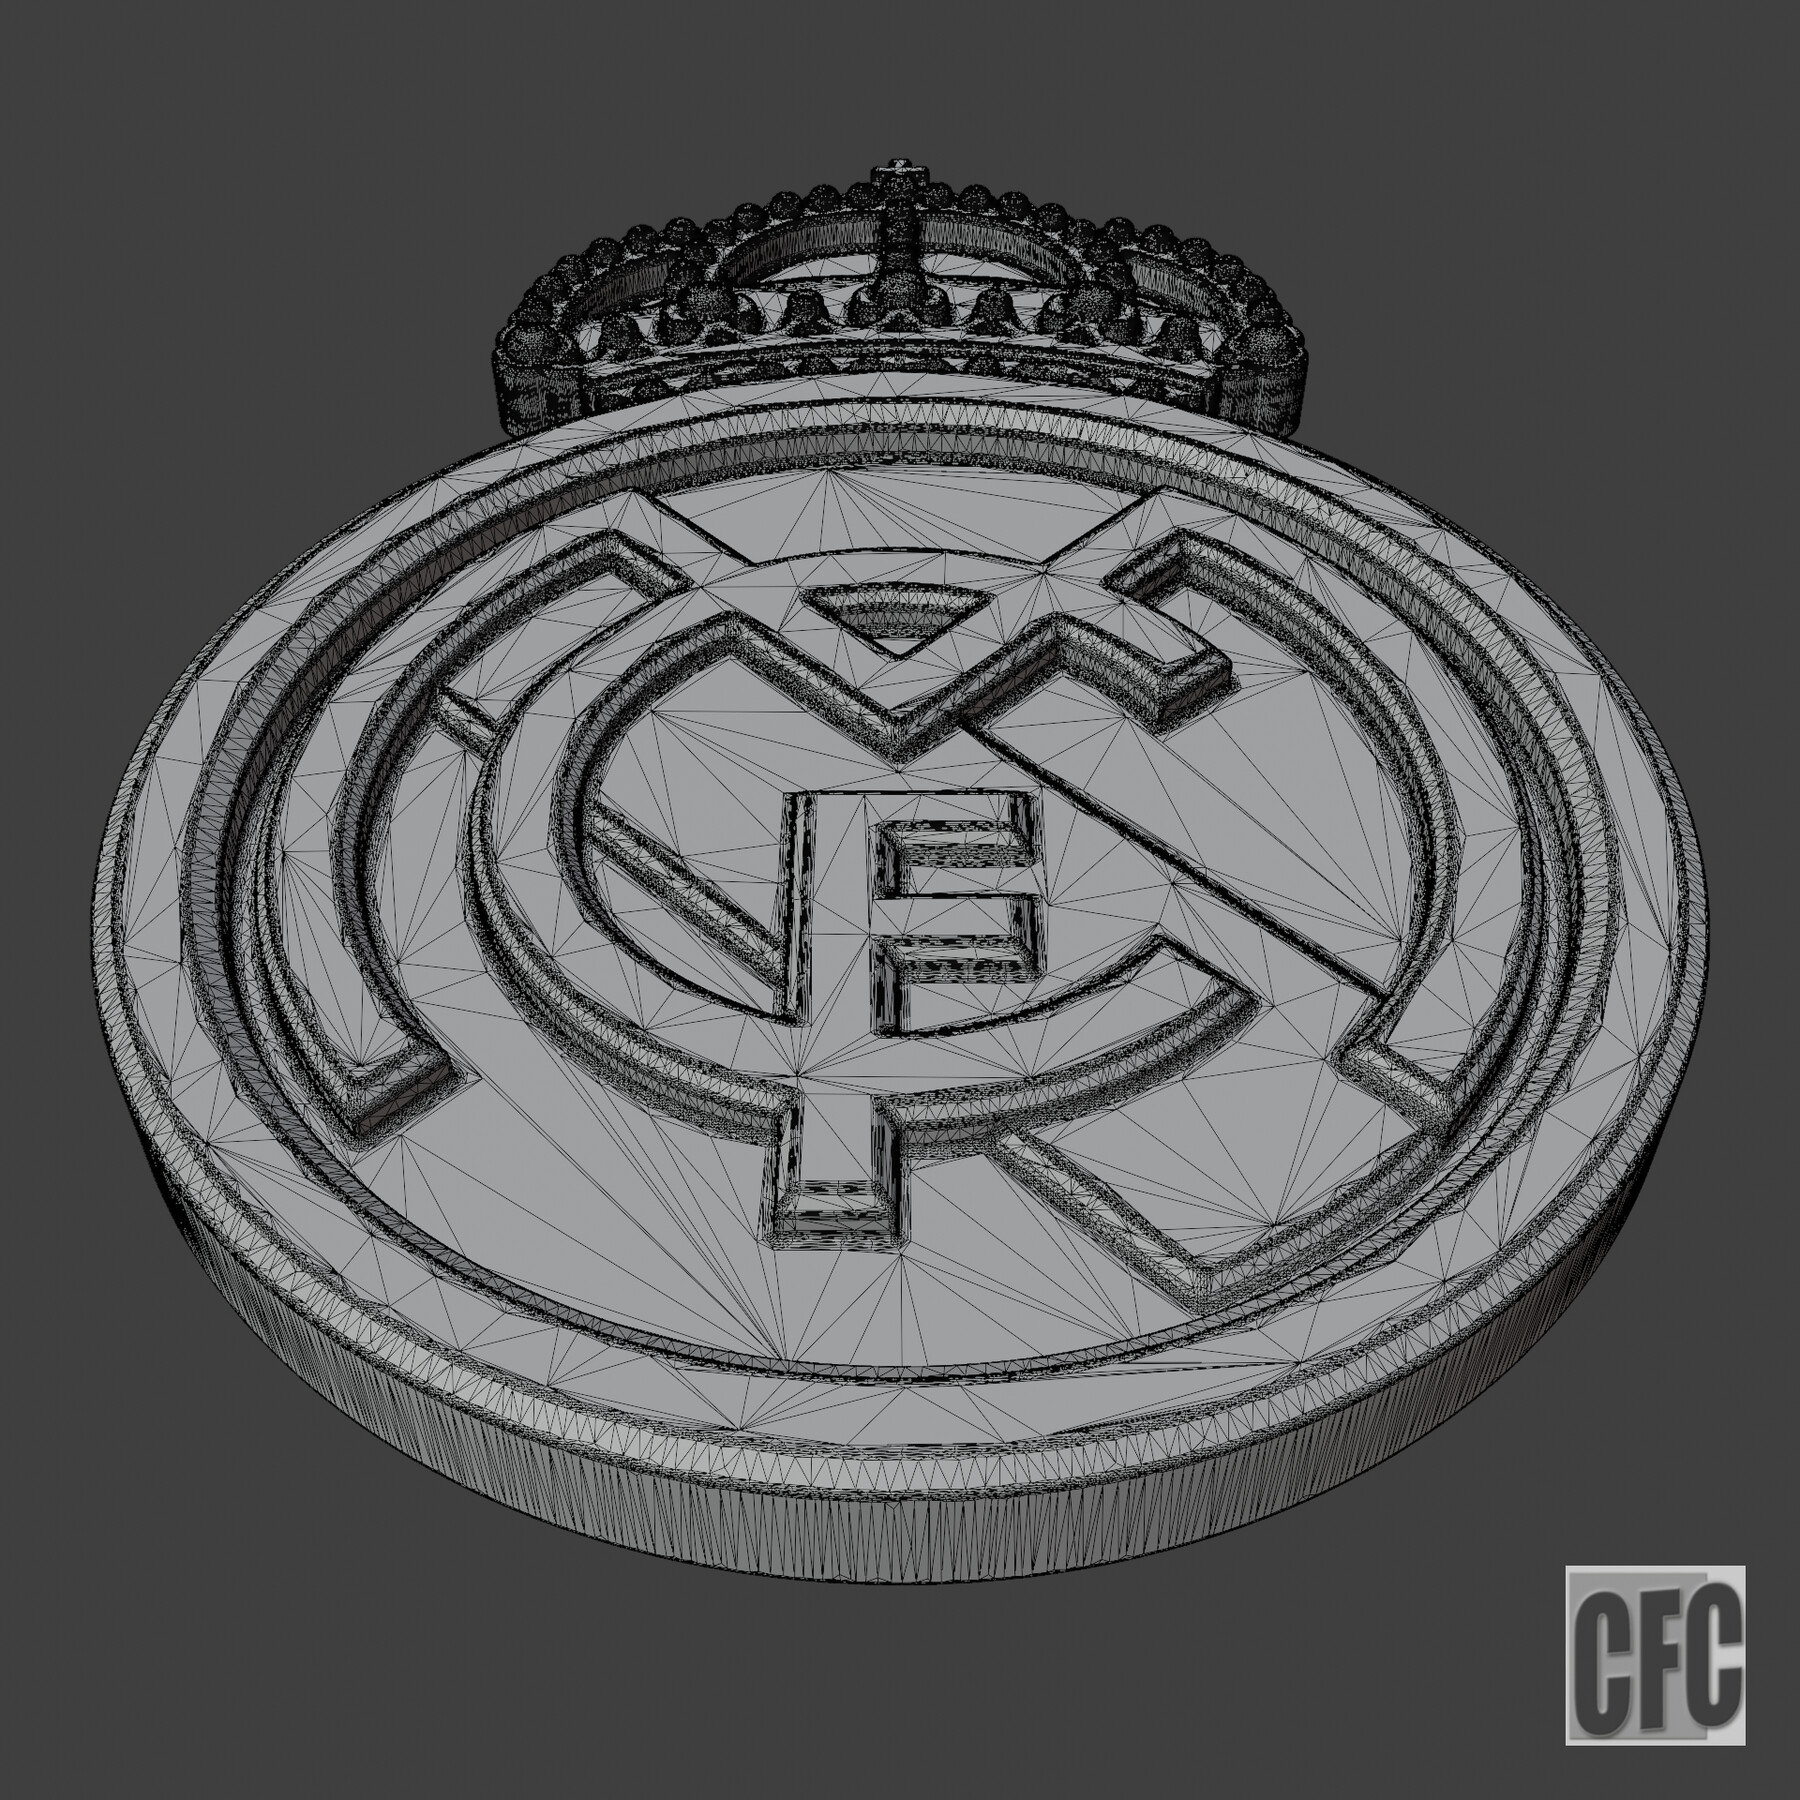 Imágenes del escudo del Real Madrid para descargar